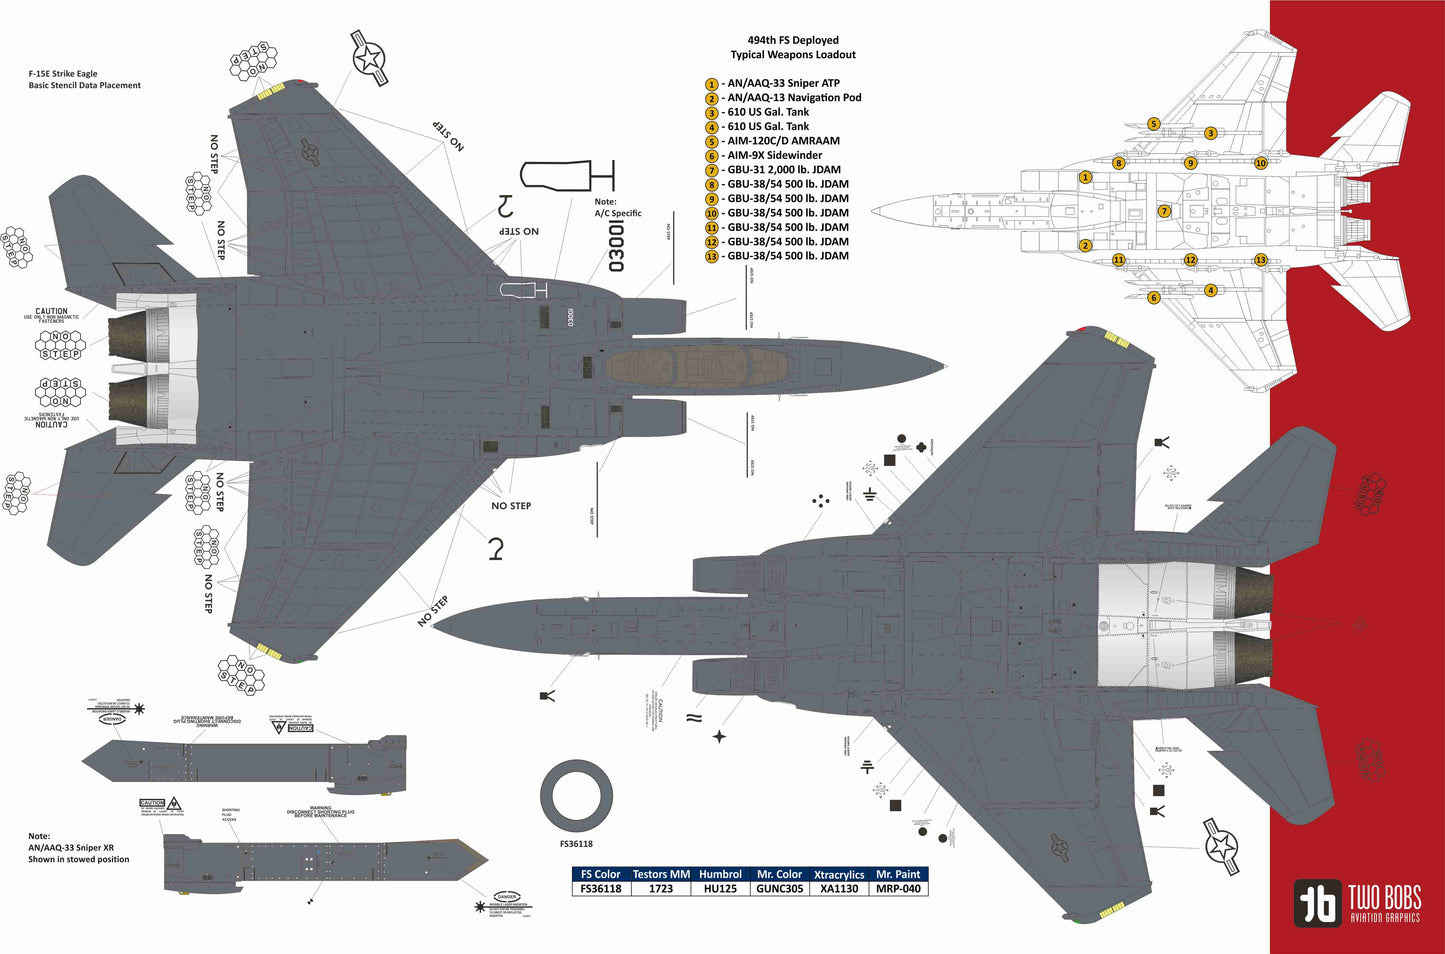 Two Bobs 48-265 F-15E Maximum Effort Eagles Decals 1/48